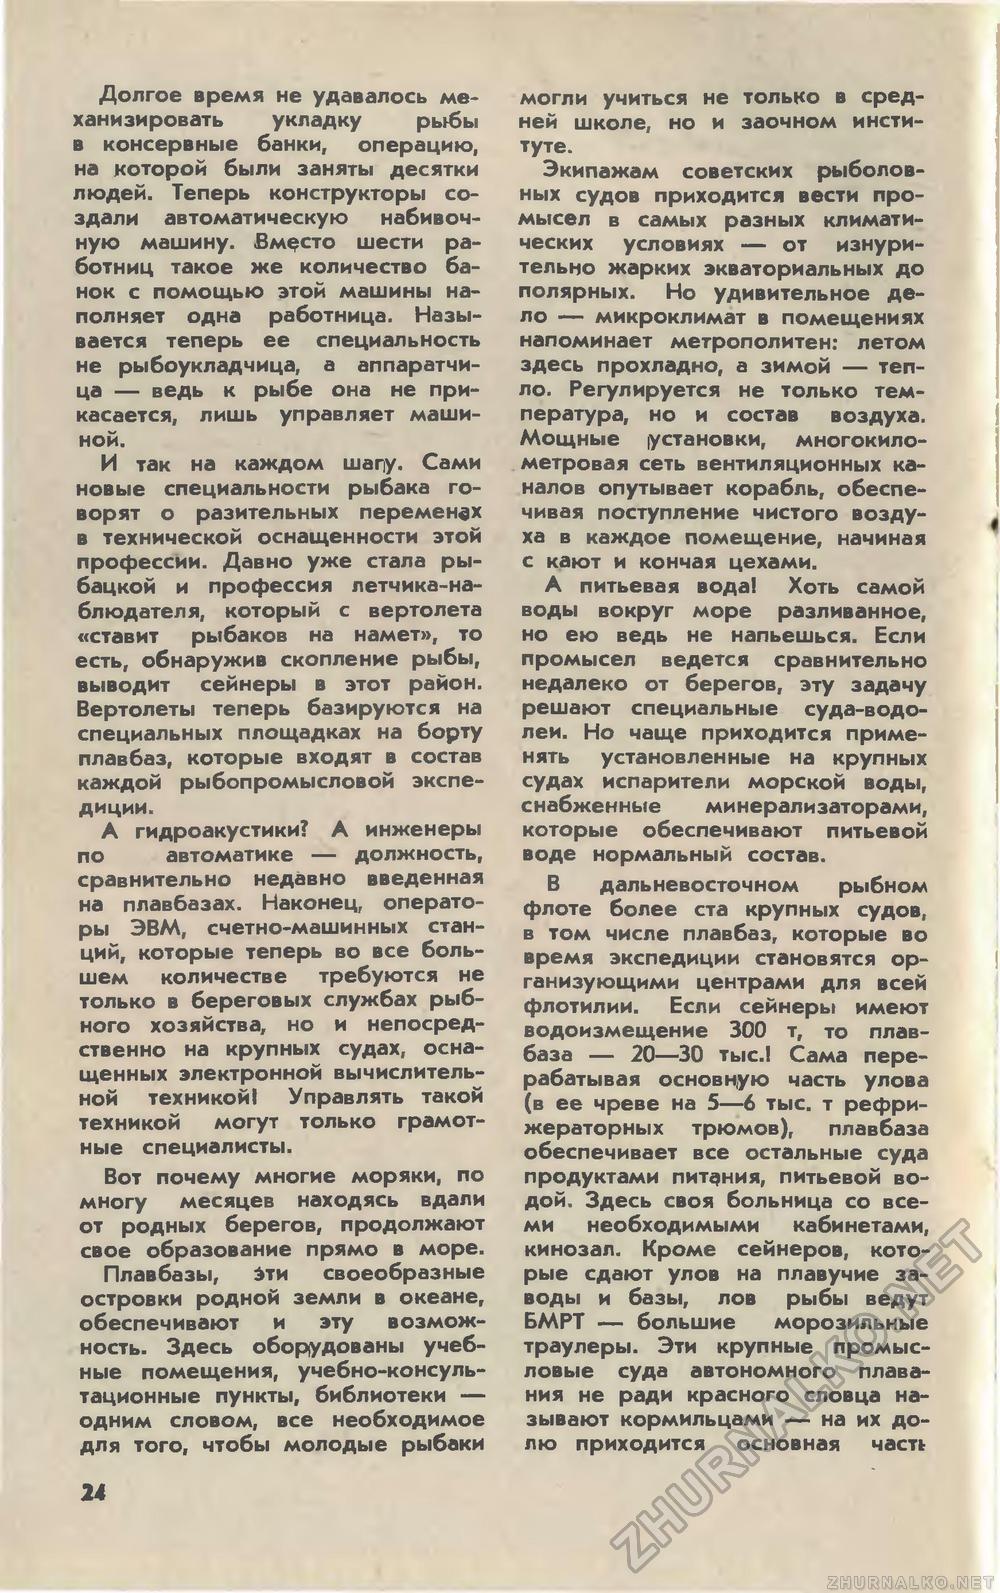   1981-04,  26